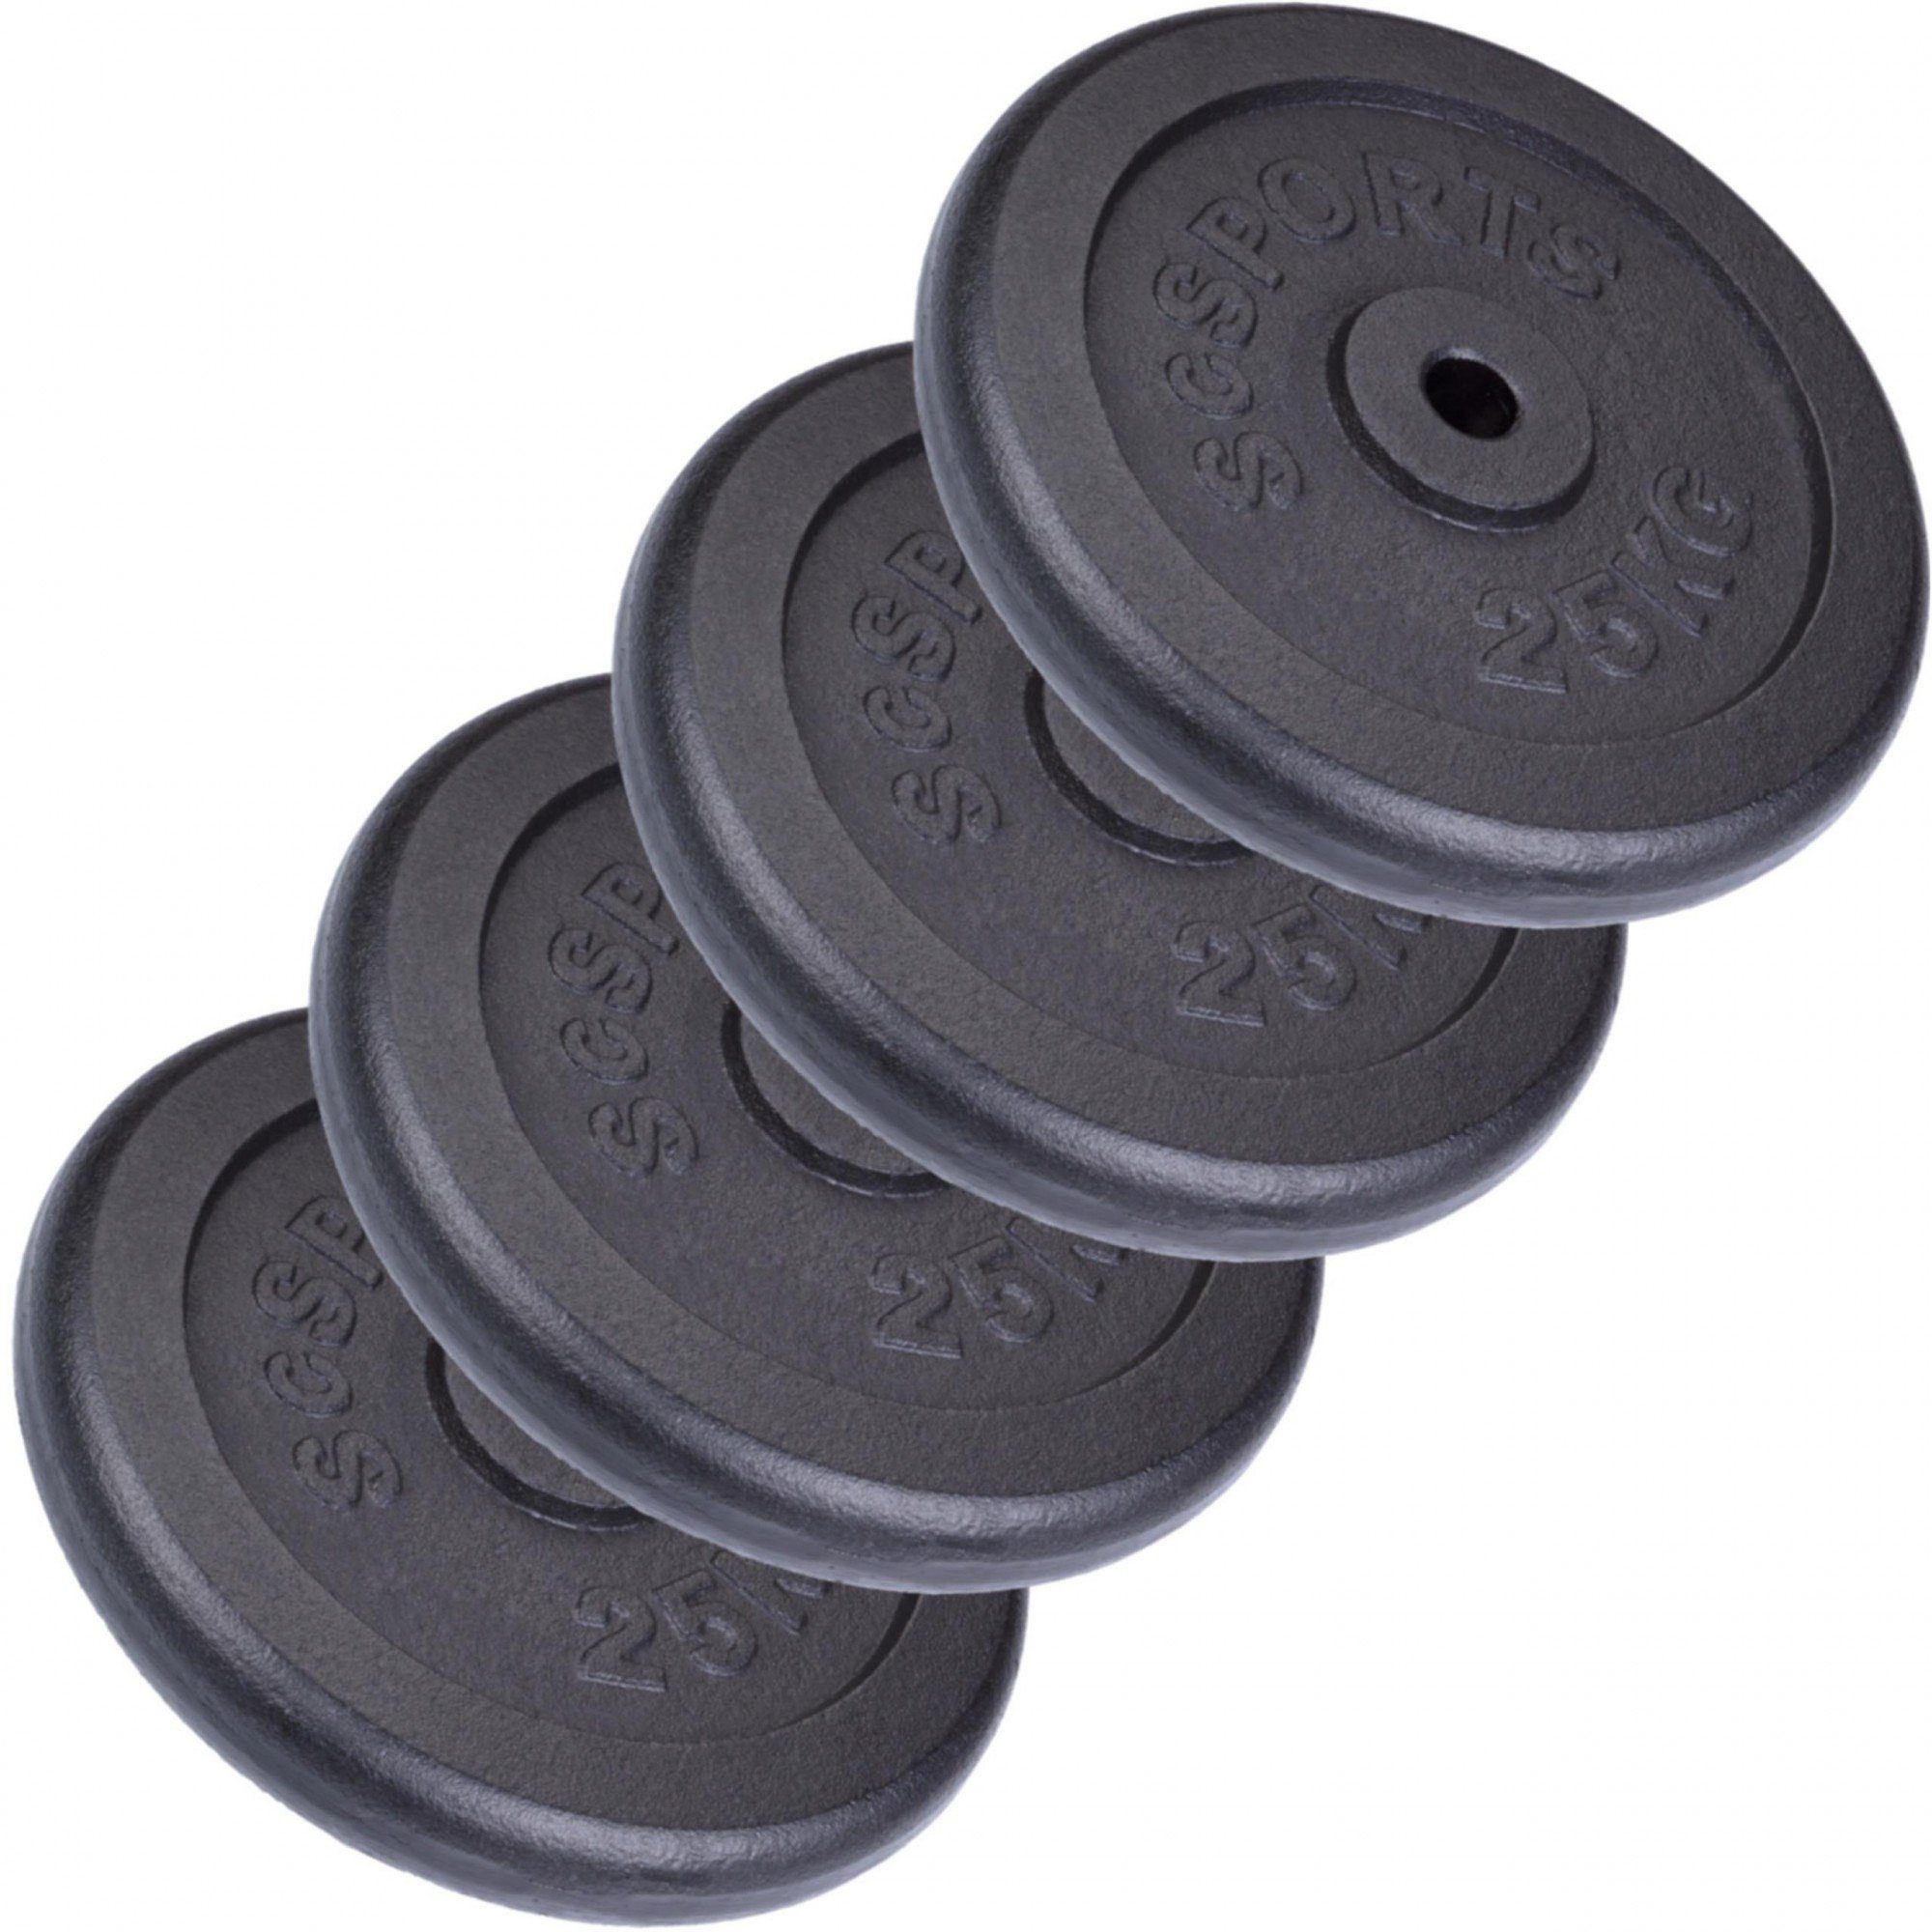 Gusseisen 30mm Hantelscheiben ScSPORTS® (10002536-tlg) Gewichte 100kg Gewichtsscheiben Guss, Set